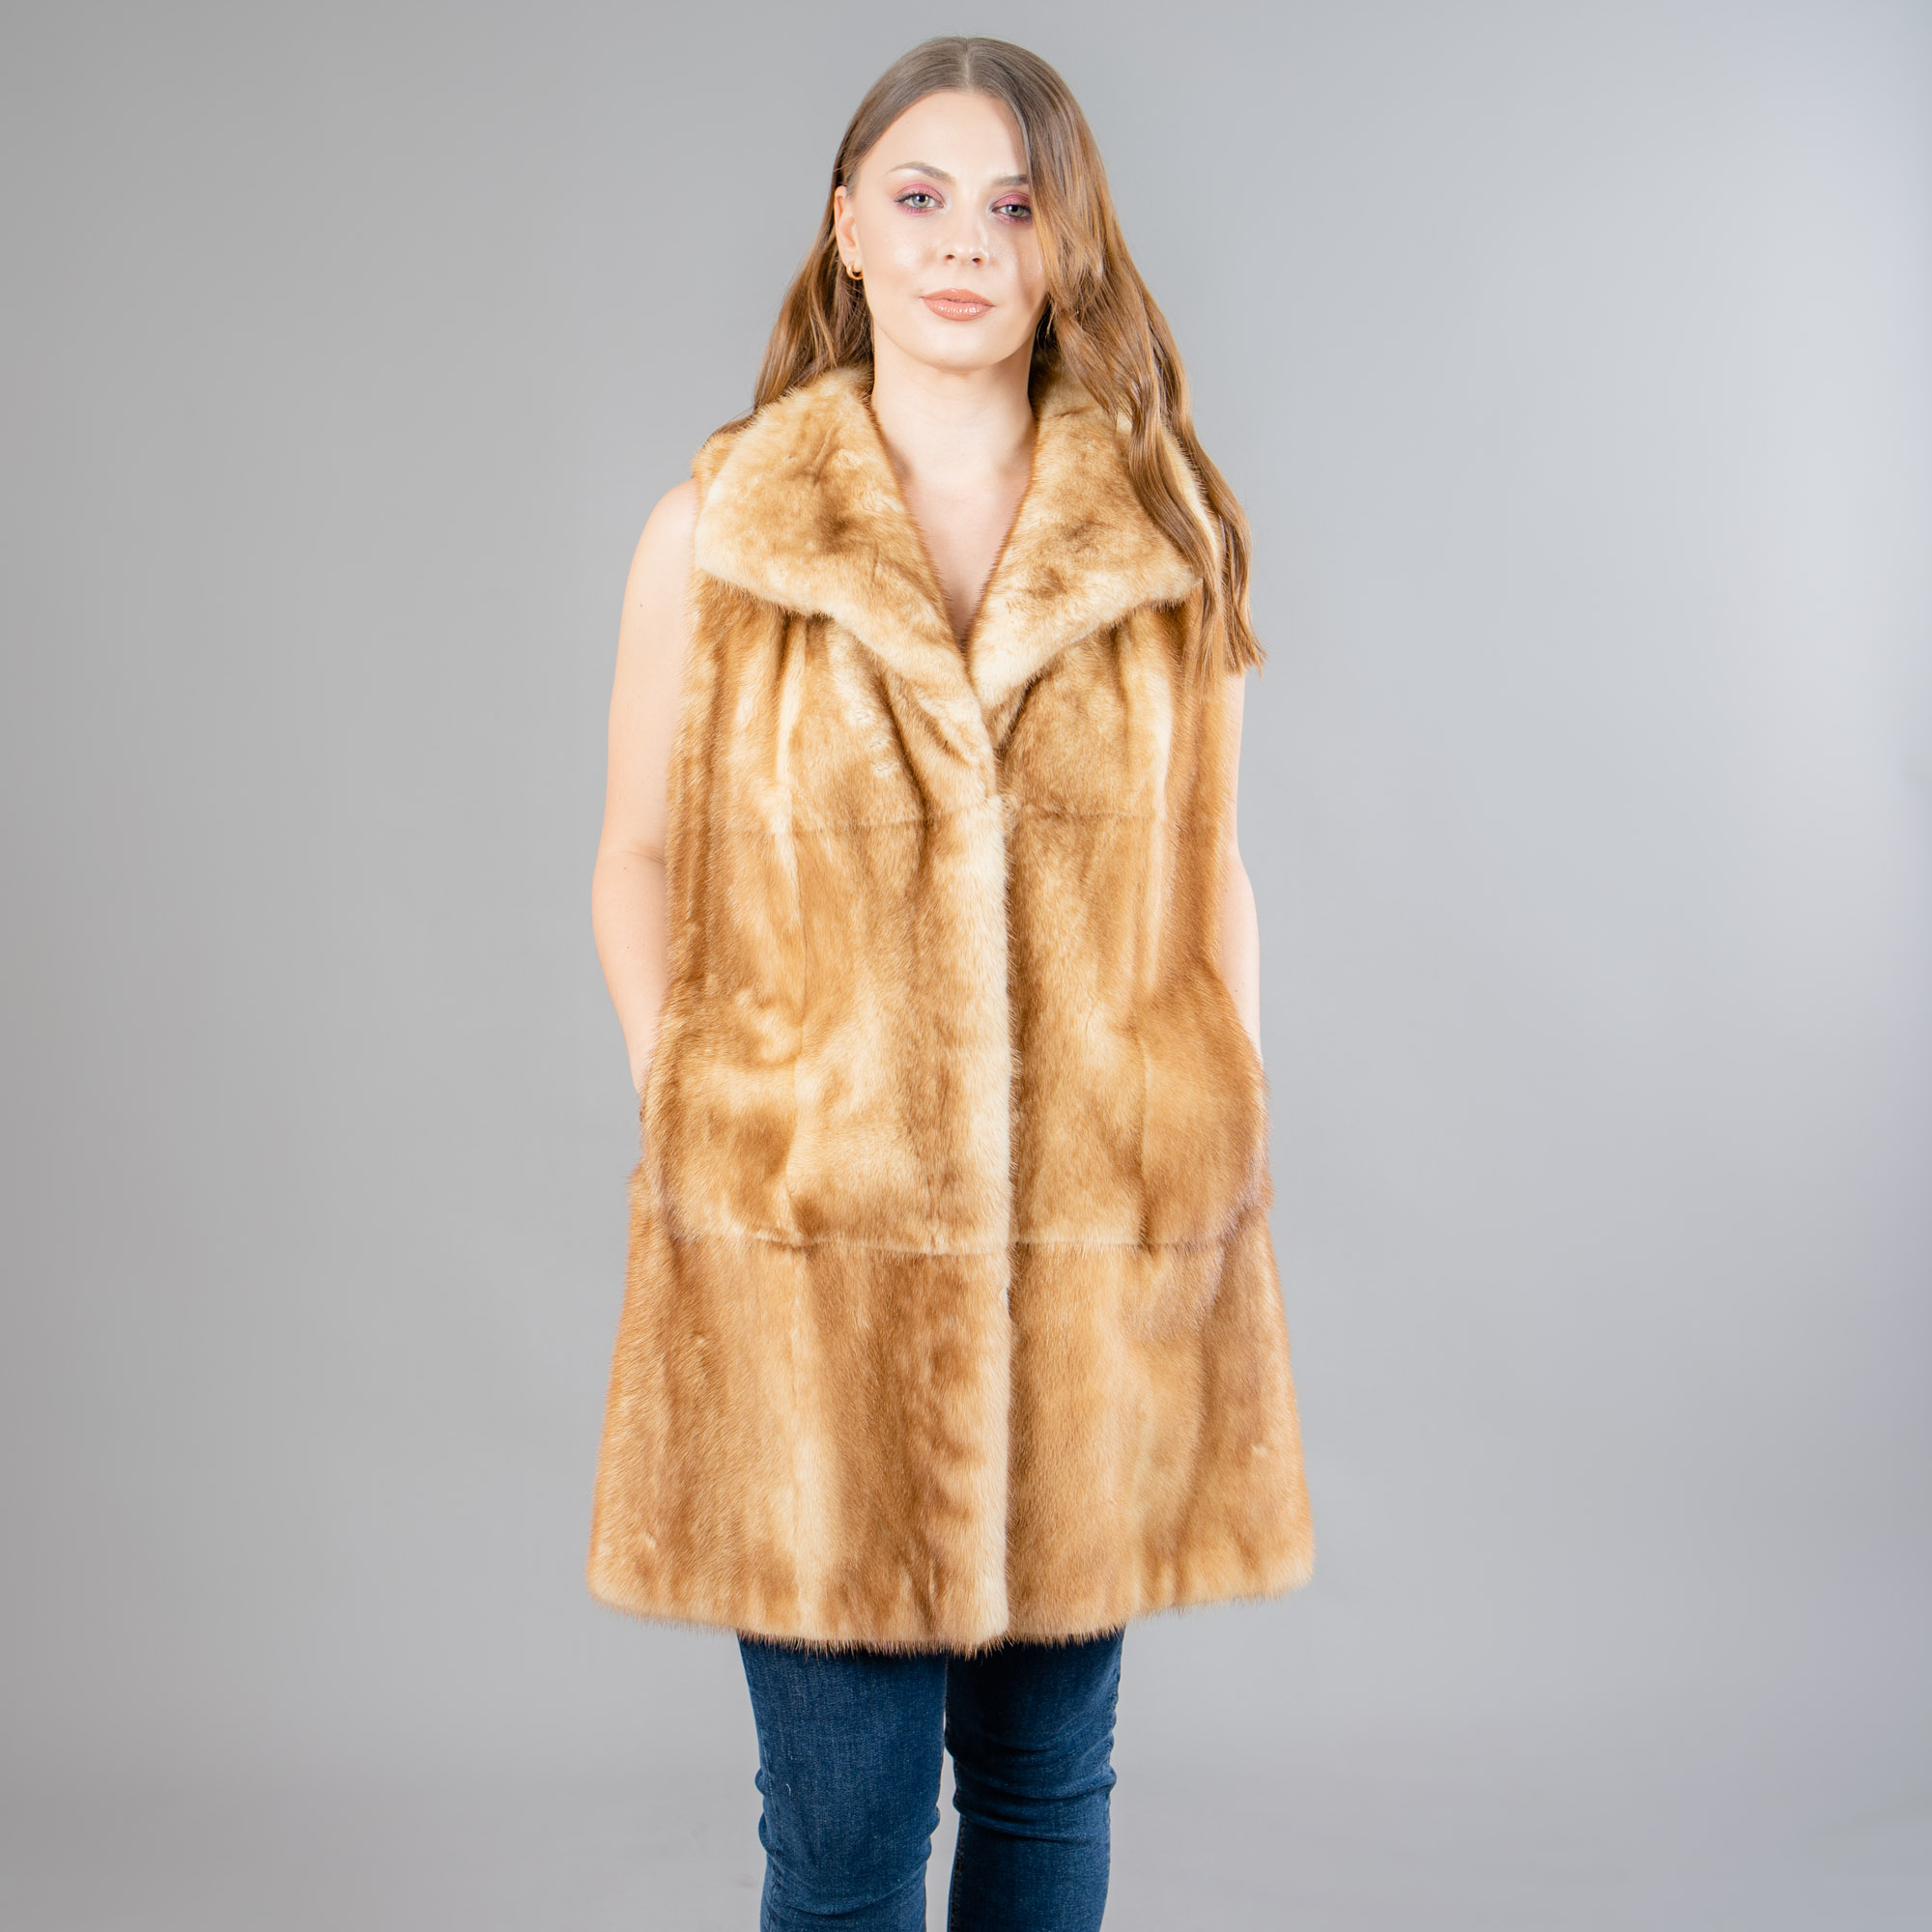 Mink fur vest in golden color